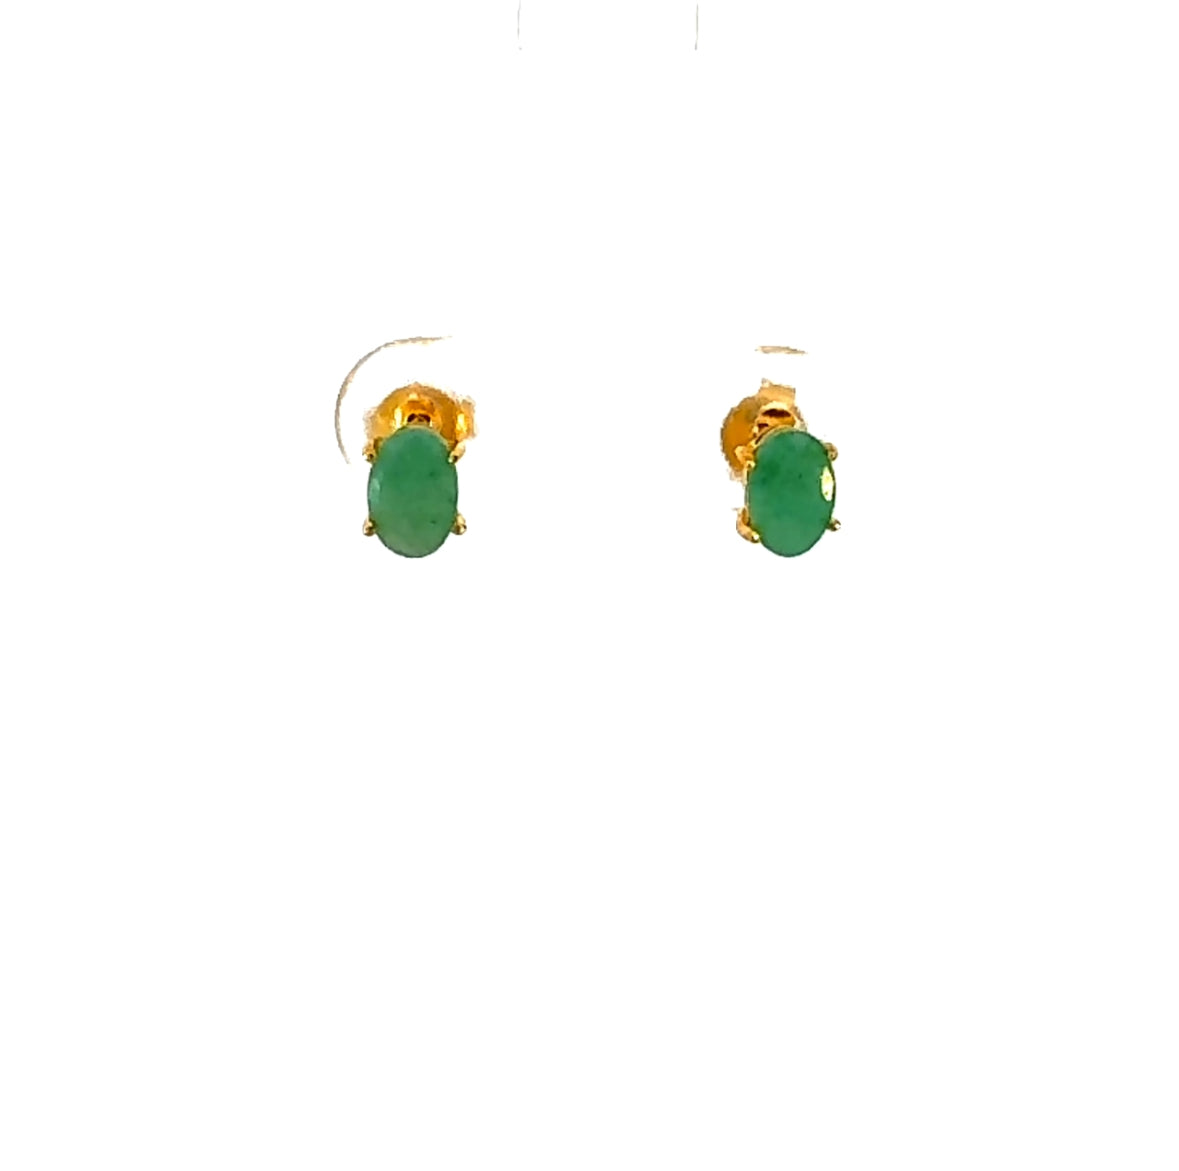 Oval Cut Emerald Stud Earrings in Vermeil